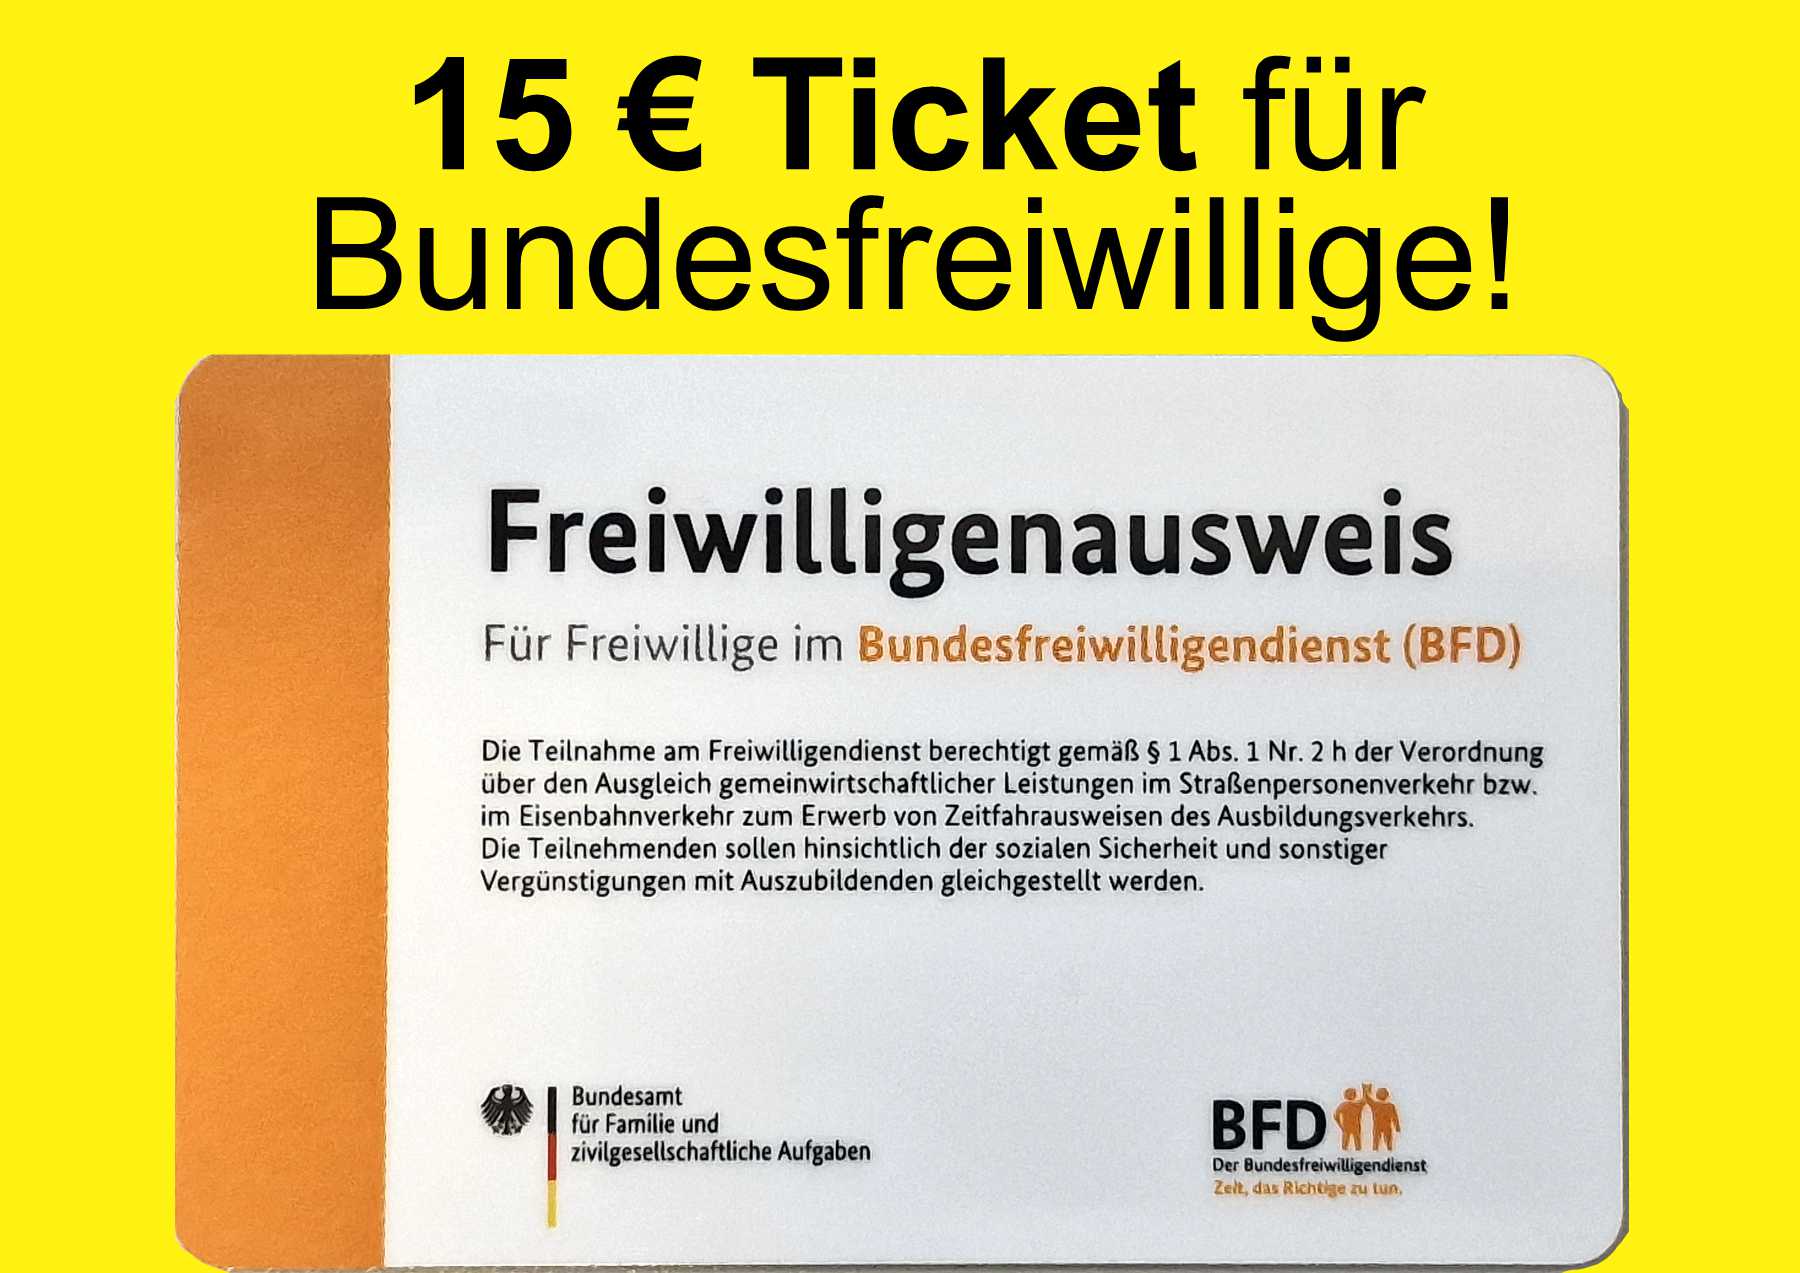 Проездной билет за 15 евро в месяц для волонтеров BFD